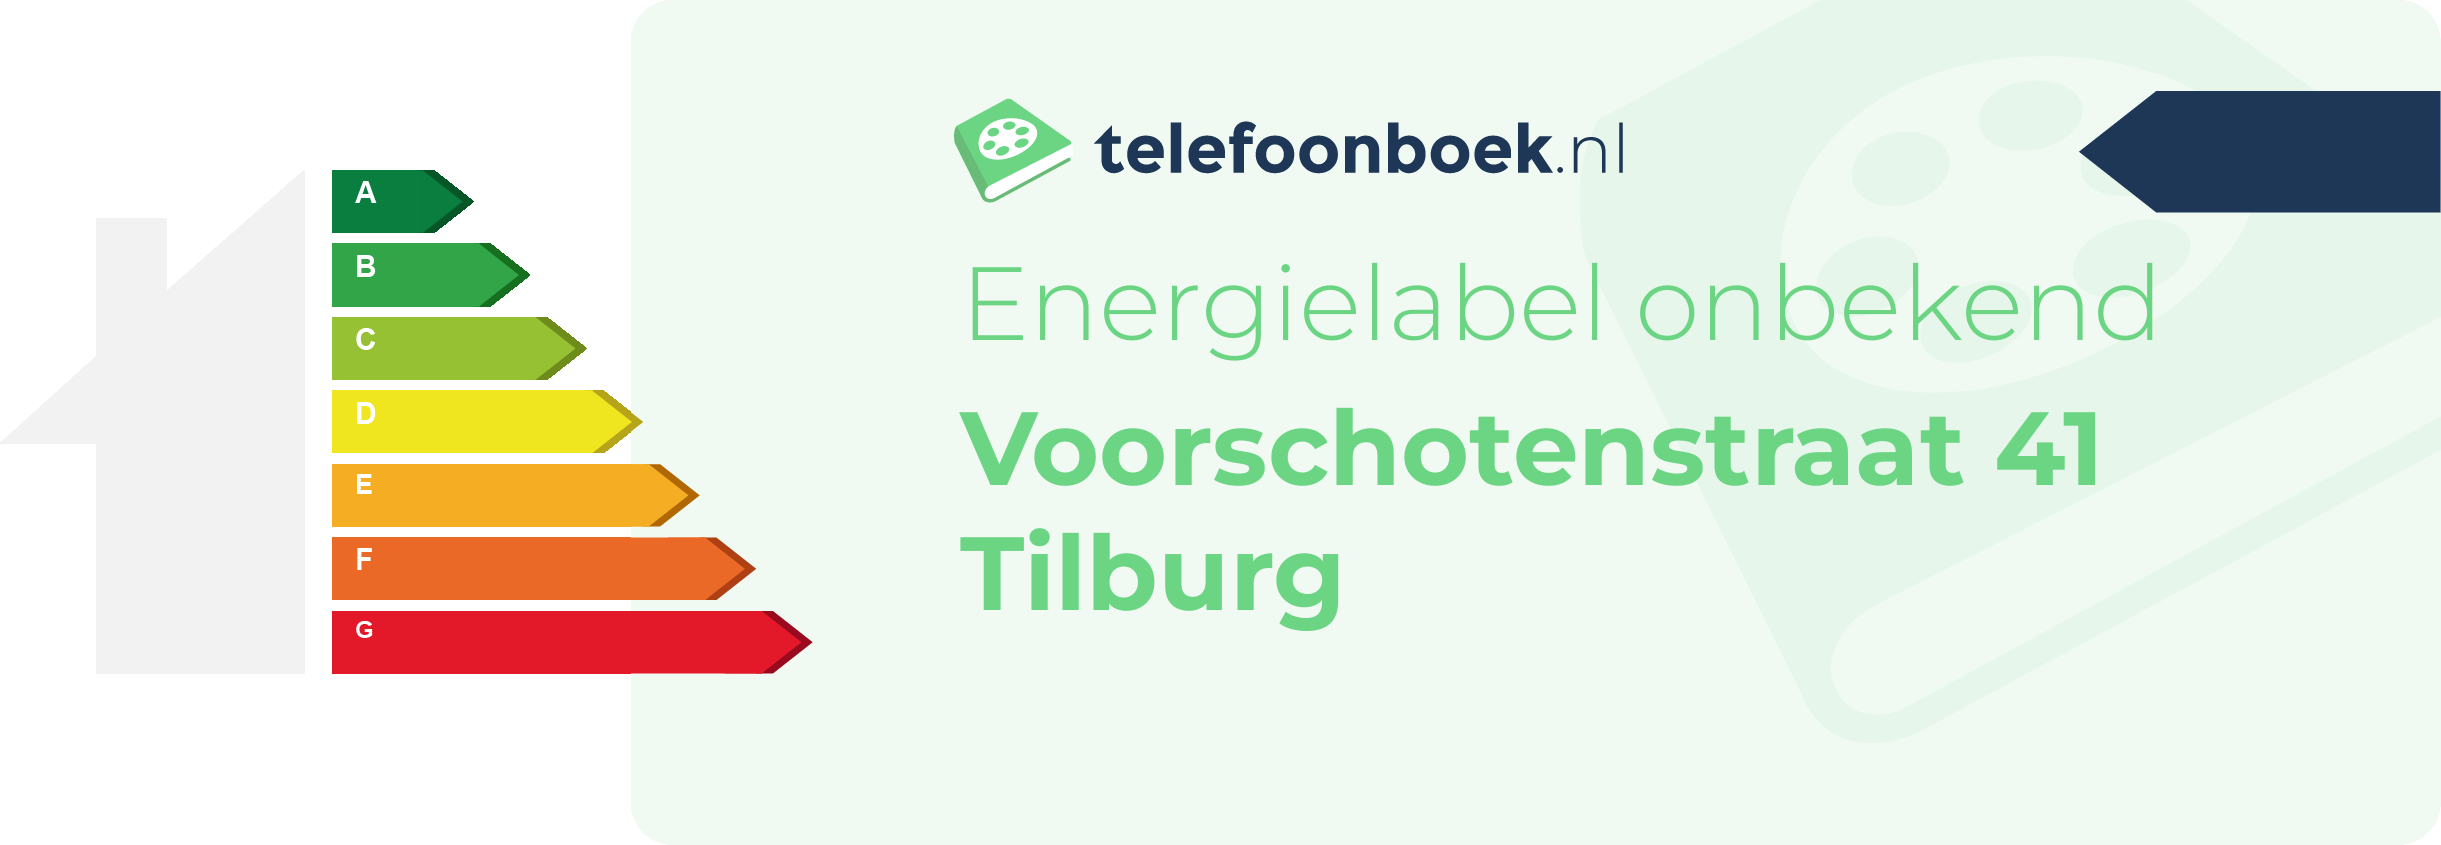 Energielabel Voorschotenstraat 41 Tilburg